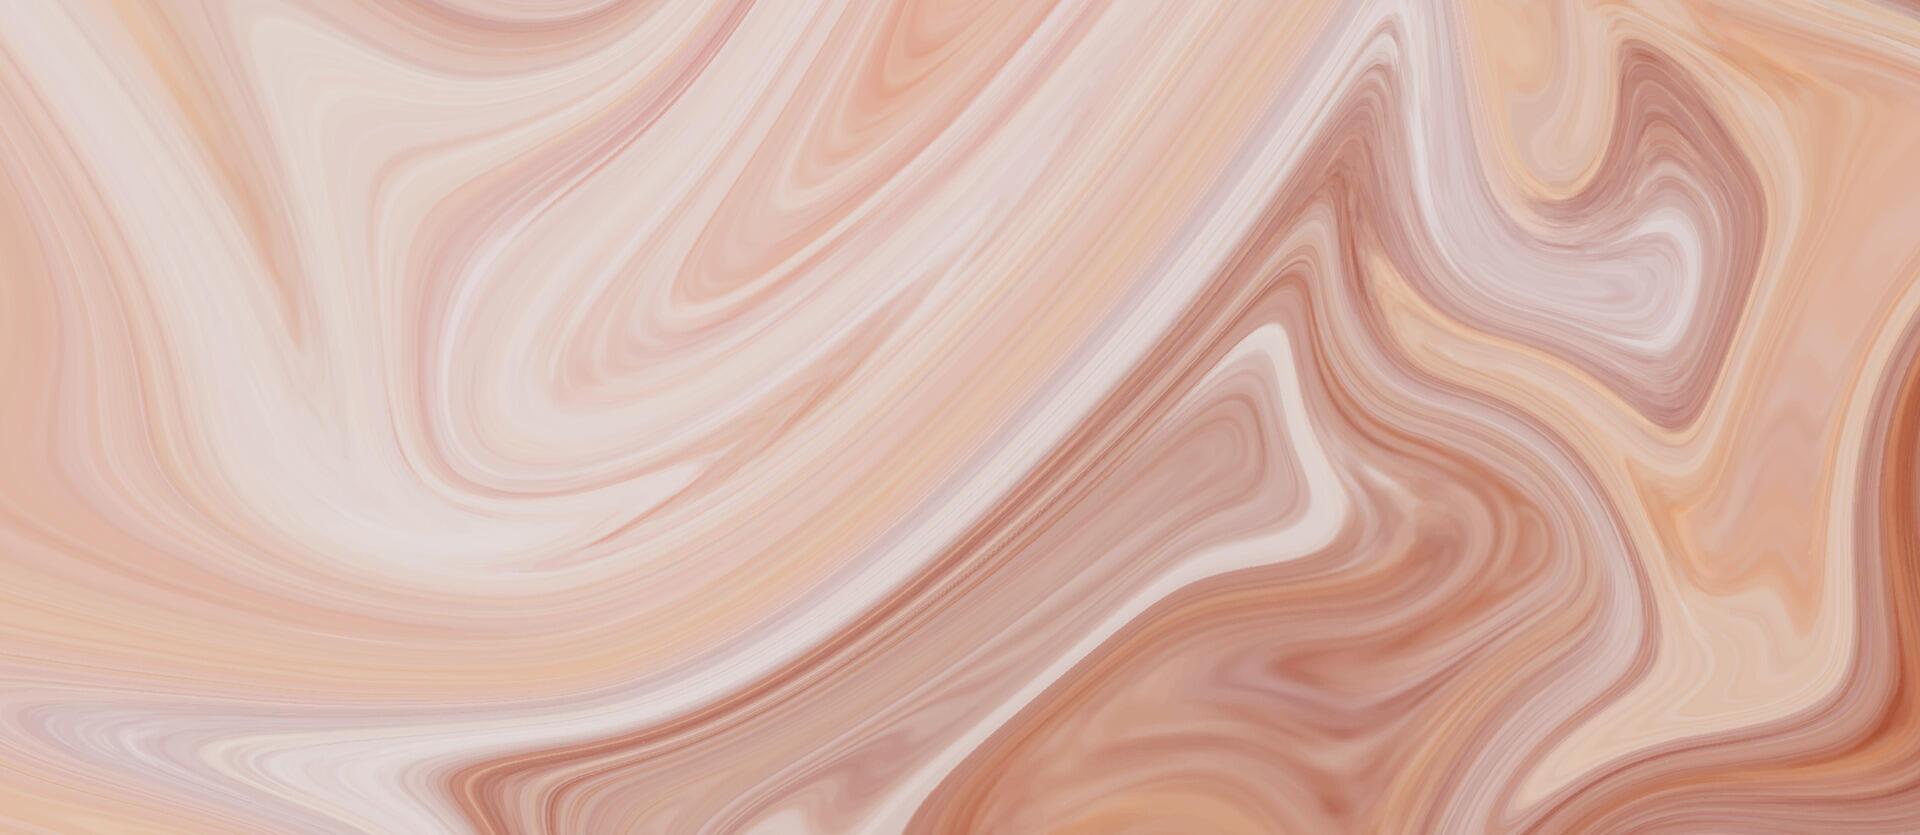 abstrakt vätska bakgrund. flytande marmor textur. färgrik flytande vågor. vektor